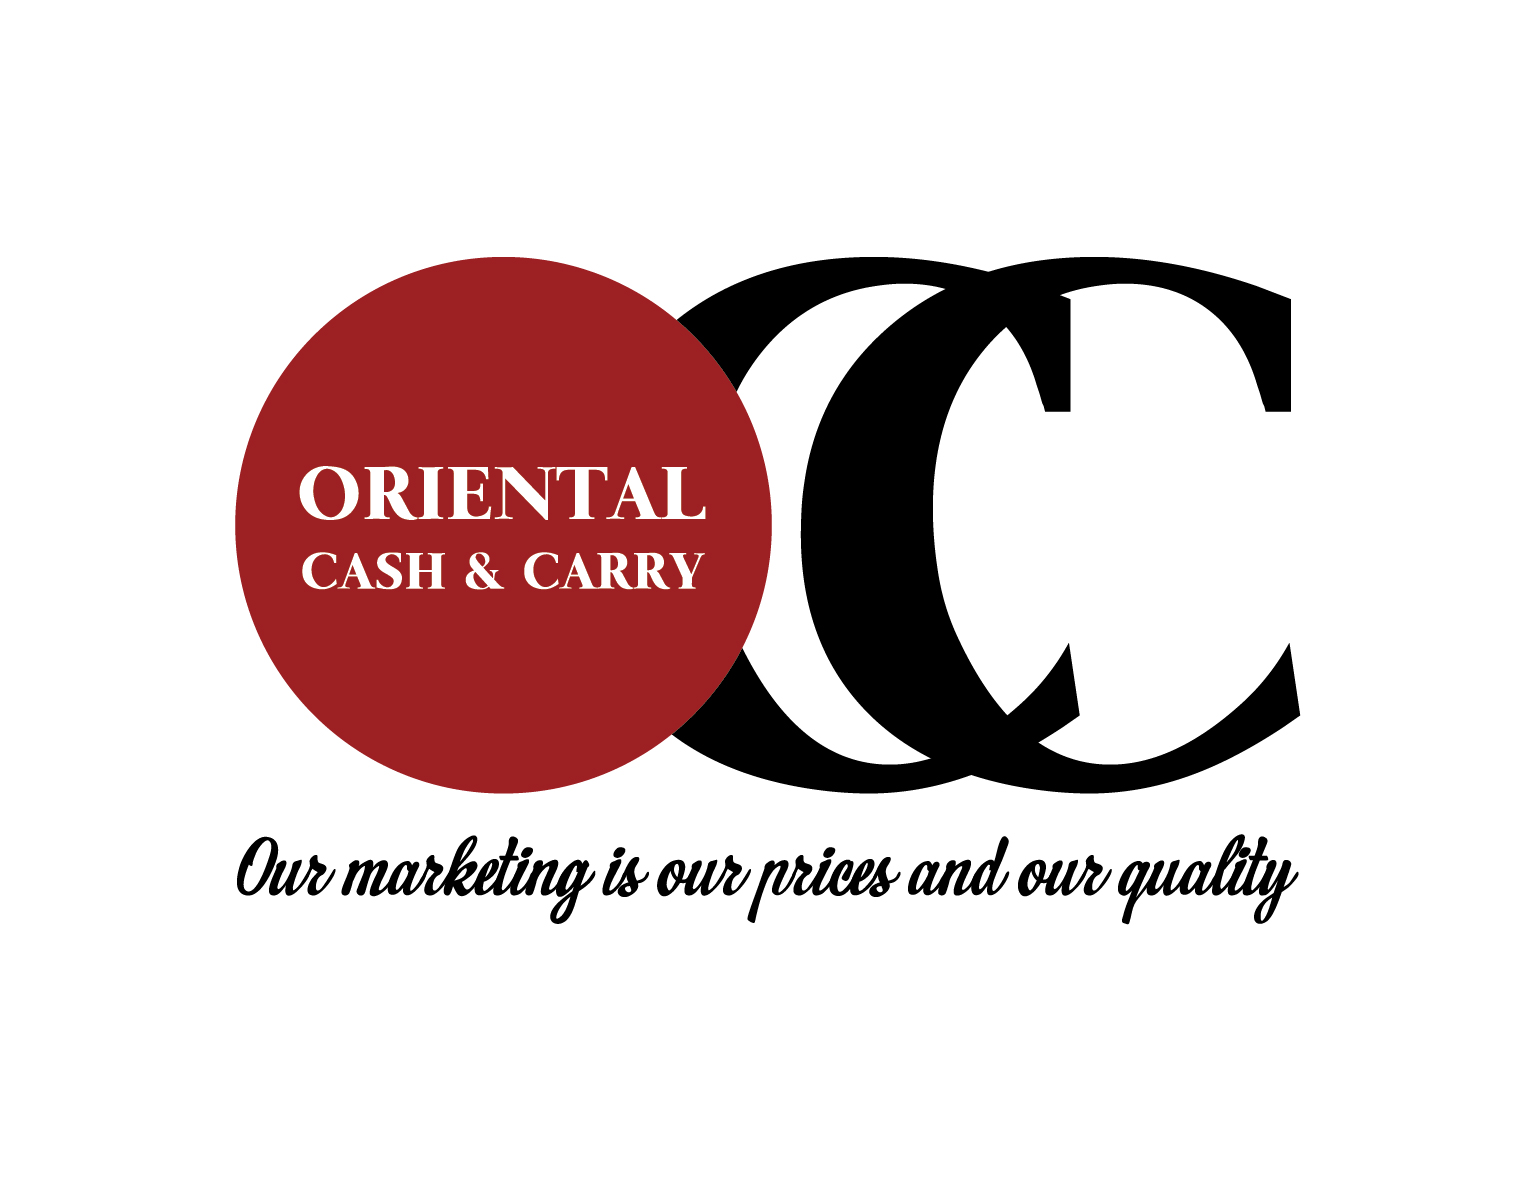 ORIENTAL CASH & CARRY